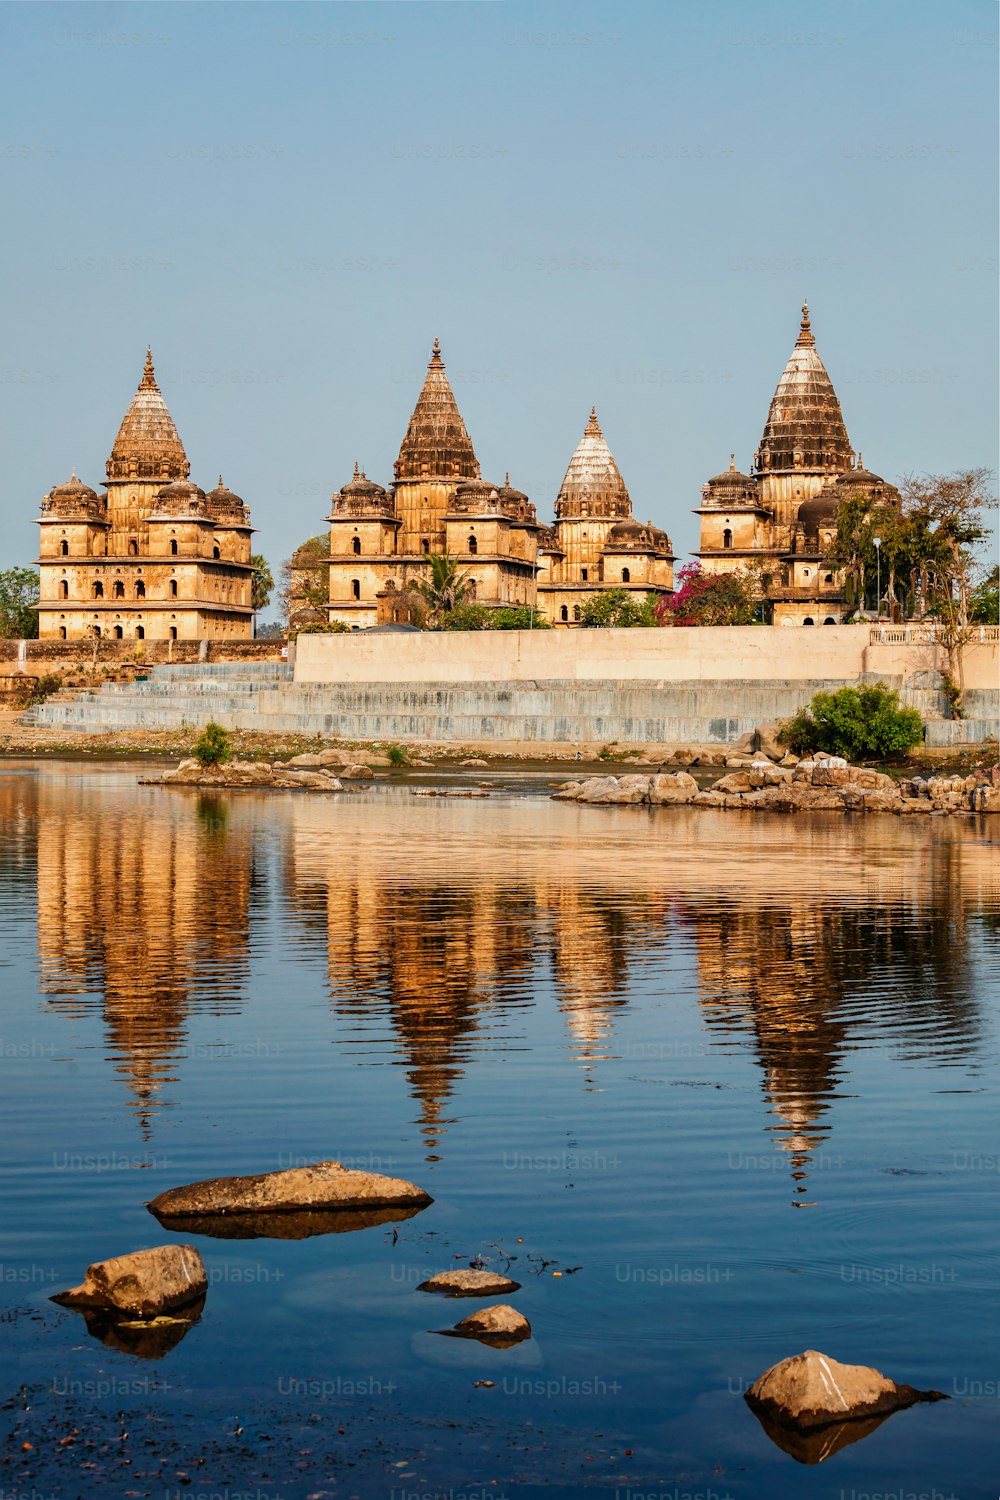 Point de repère touristique indien - vue des cénotaphes royaux d’Orchha sur la rivière Betwa. Orchha, Madhya Pradesh, Inde